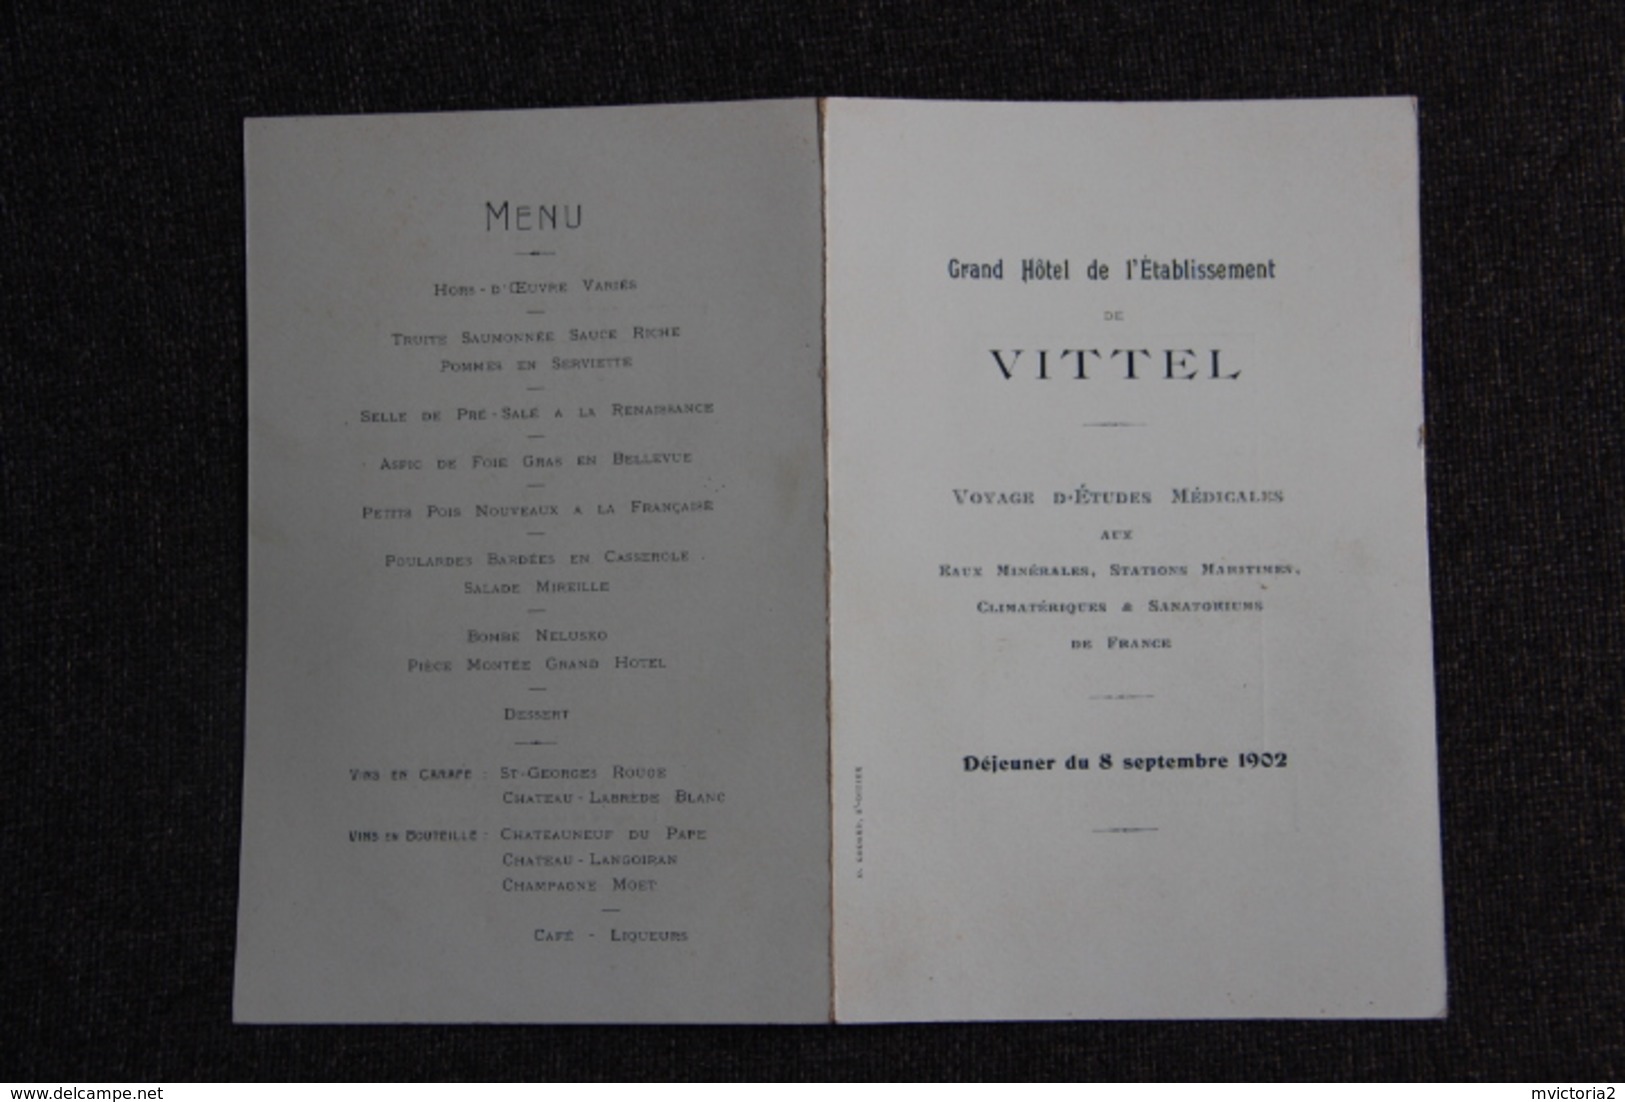 VITTEL - Très Beau Menu Pliant, Publicitaire, Servi Au Grand Hôtel De L'Etablissement De VITTEL, Le 8 Septembre 1902 - Menükarten